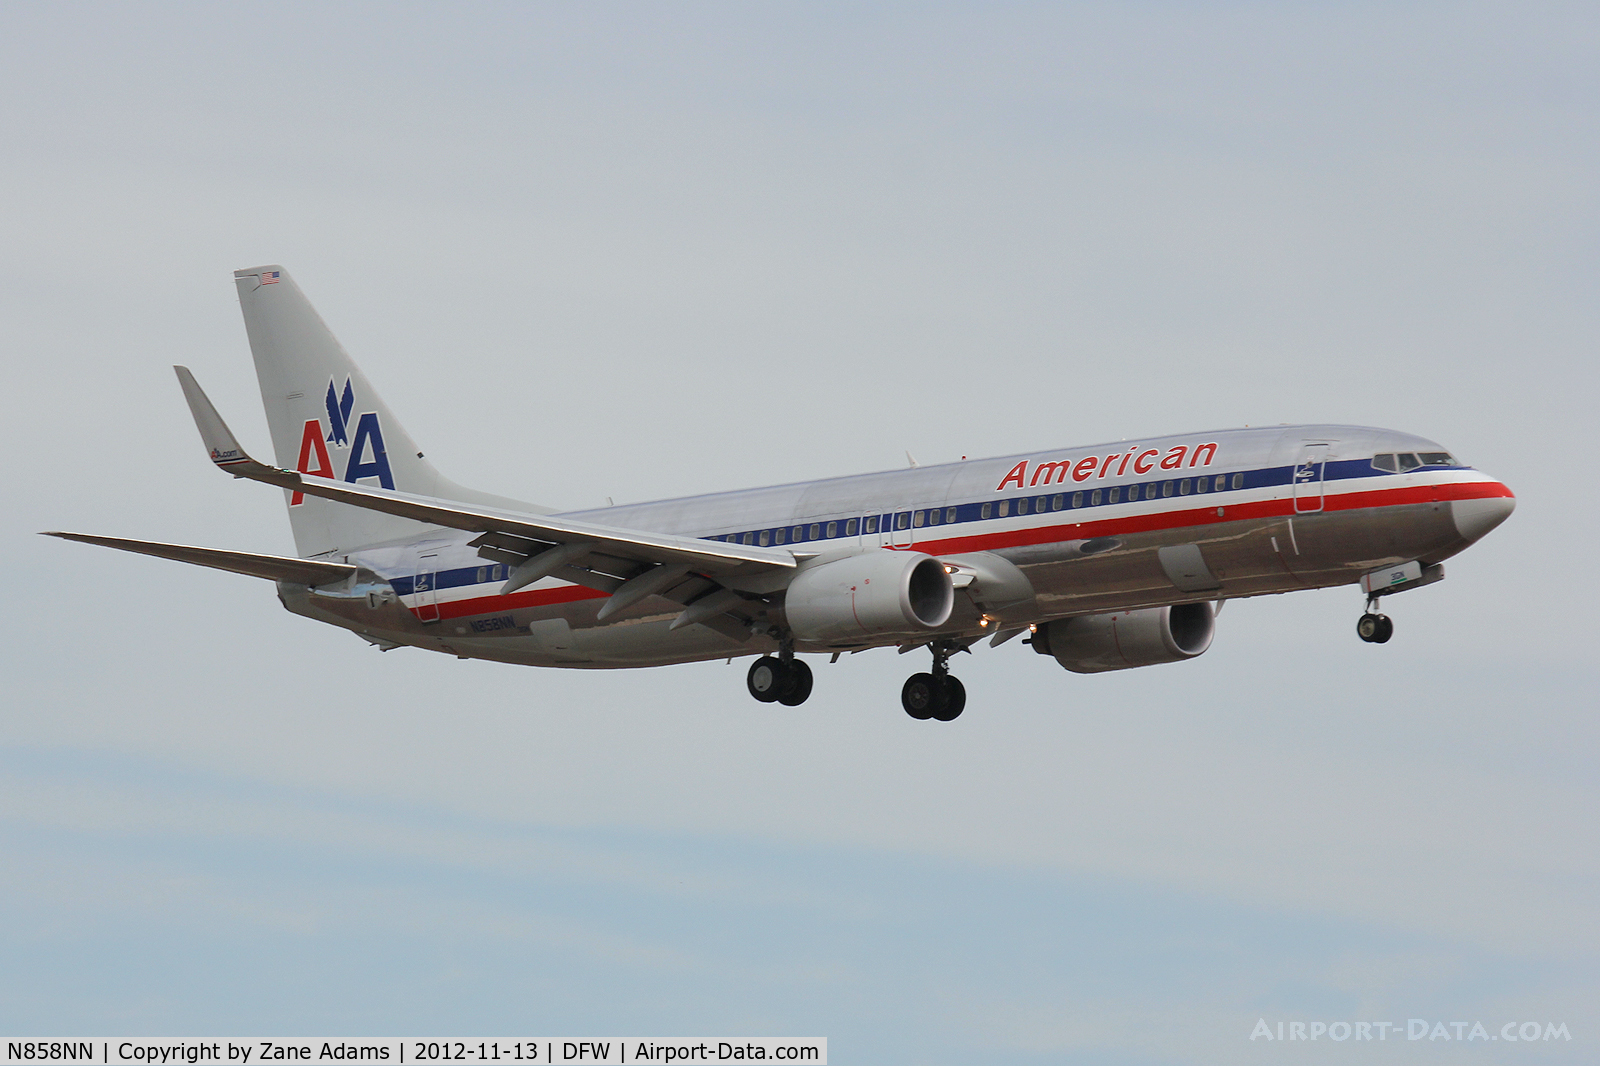 N858NN, Boeing 737-823 C/N 30904, American Airlines landing at DFW Airport